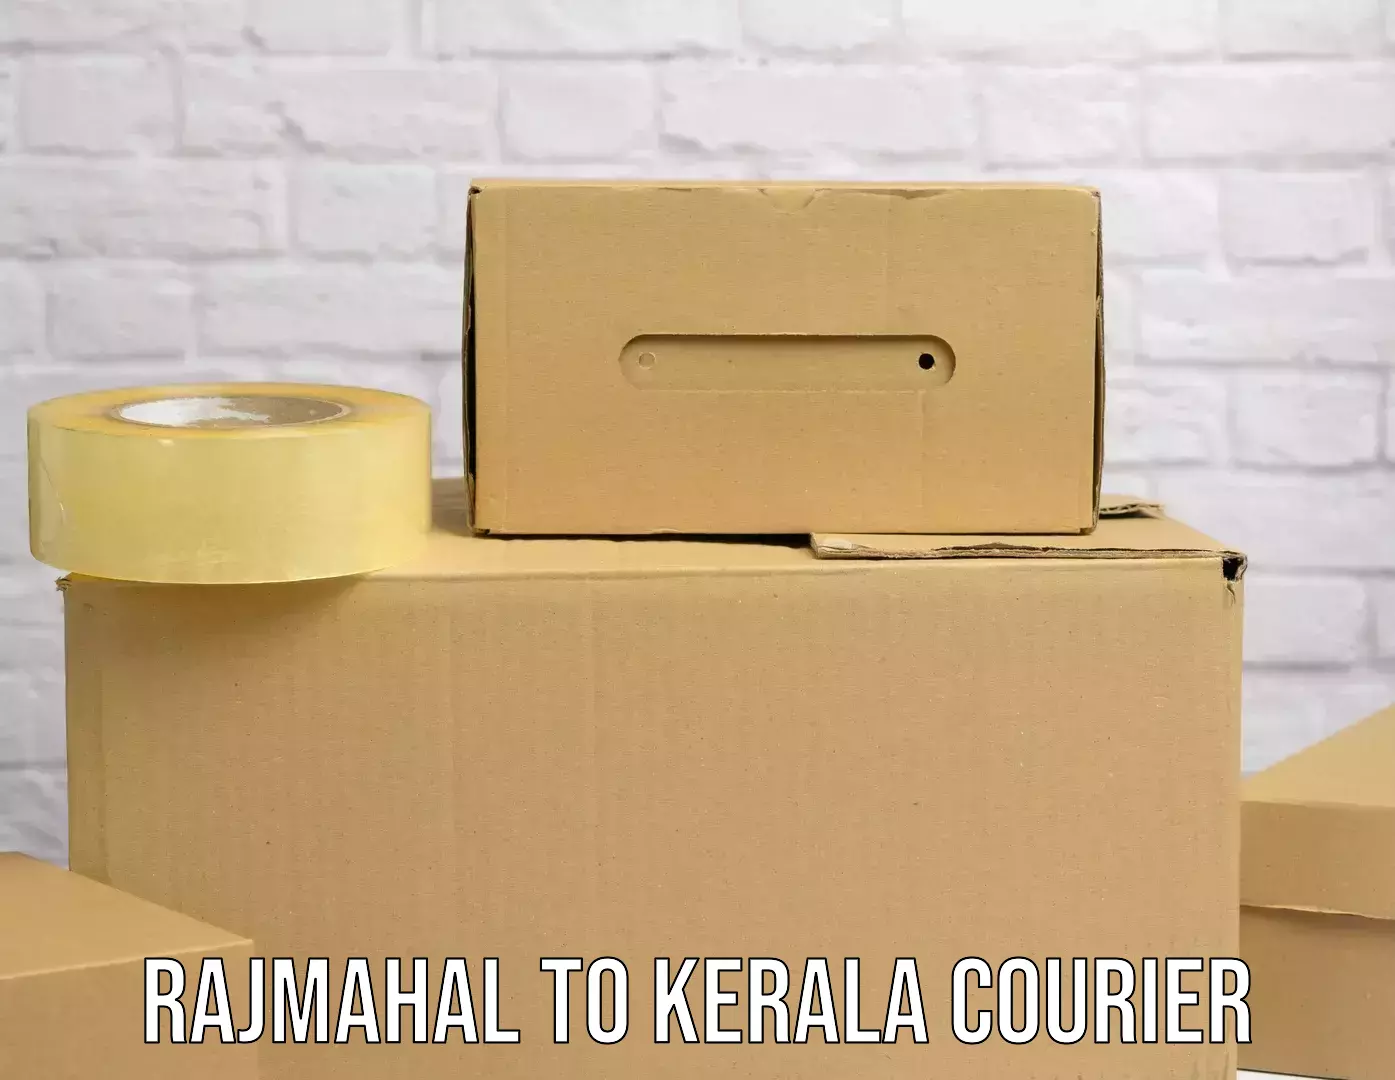 Online courier booking Rajmahal to Pangodu